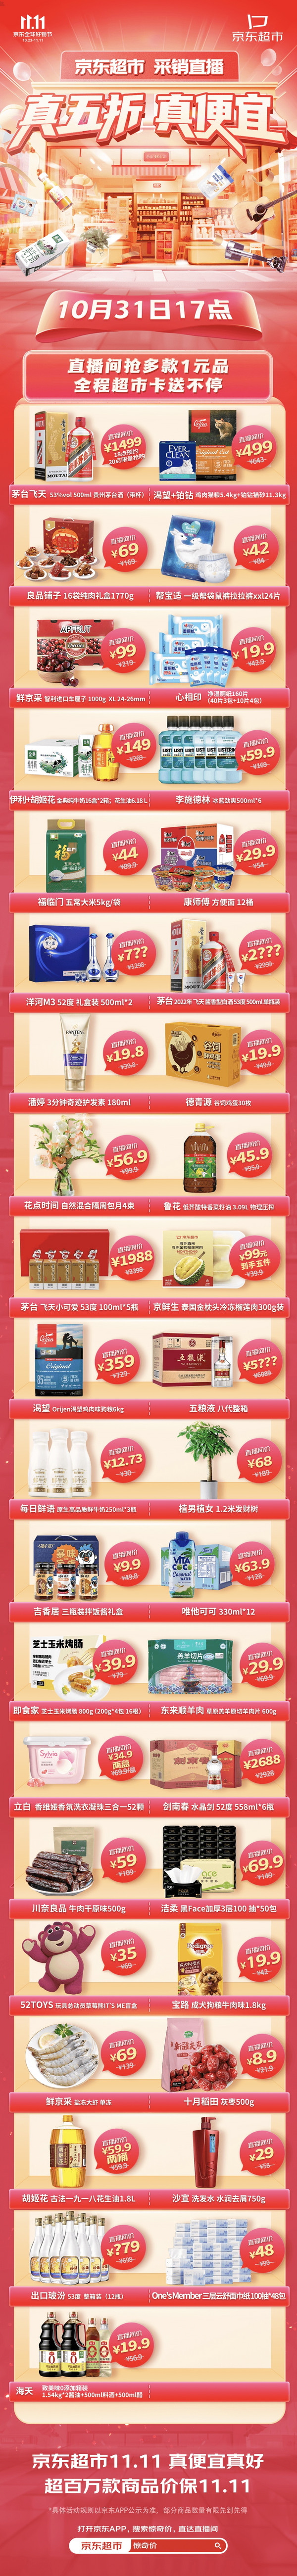 促销活动：京东超市 11.11全球好物节 采销官方直播间